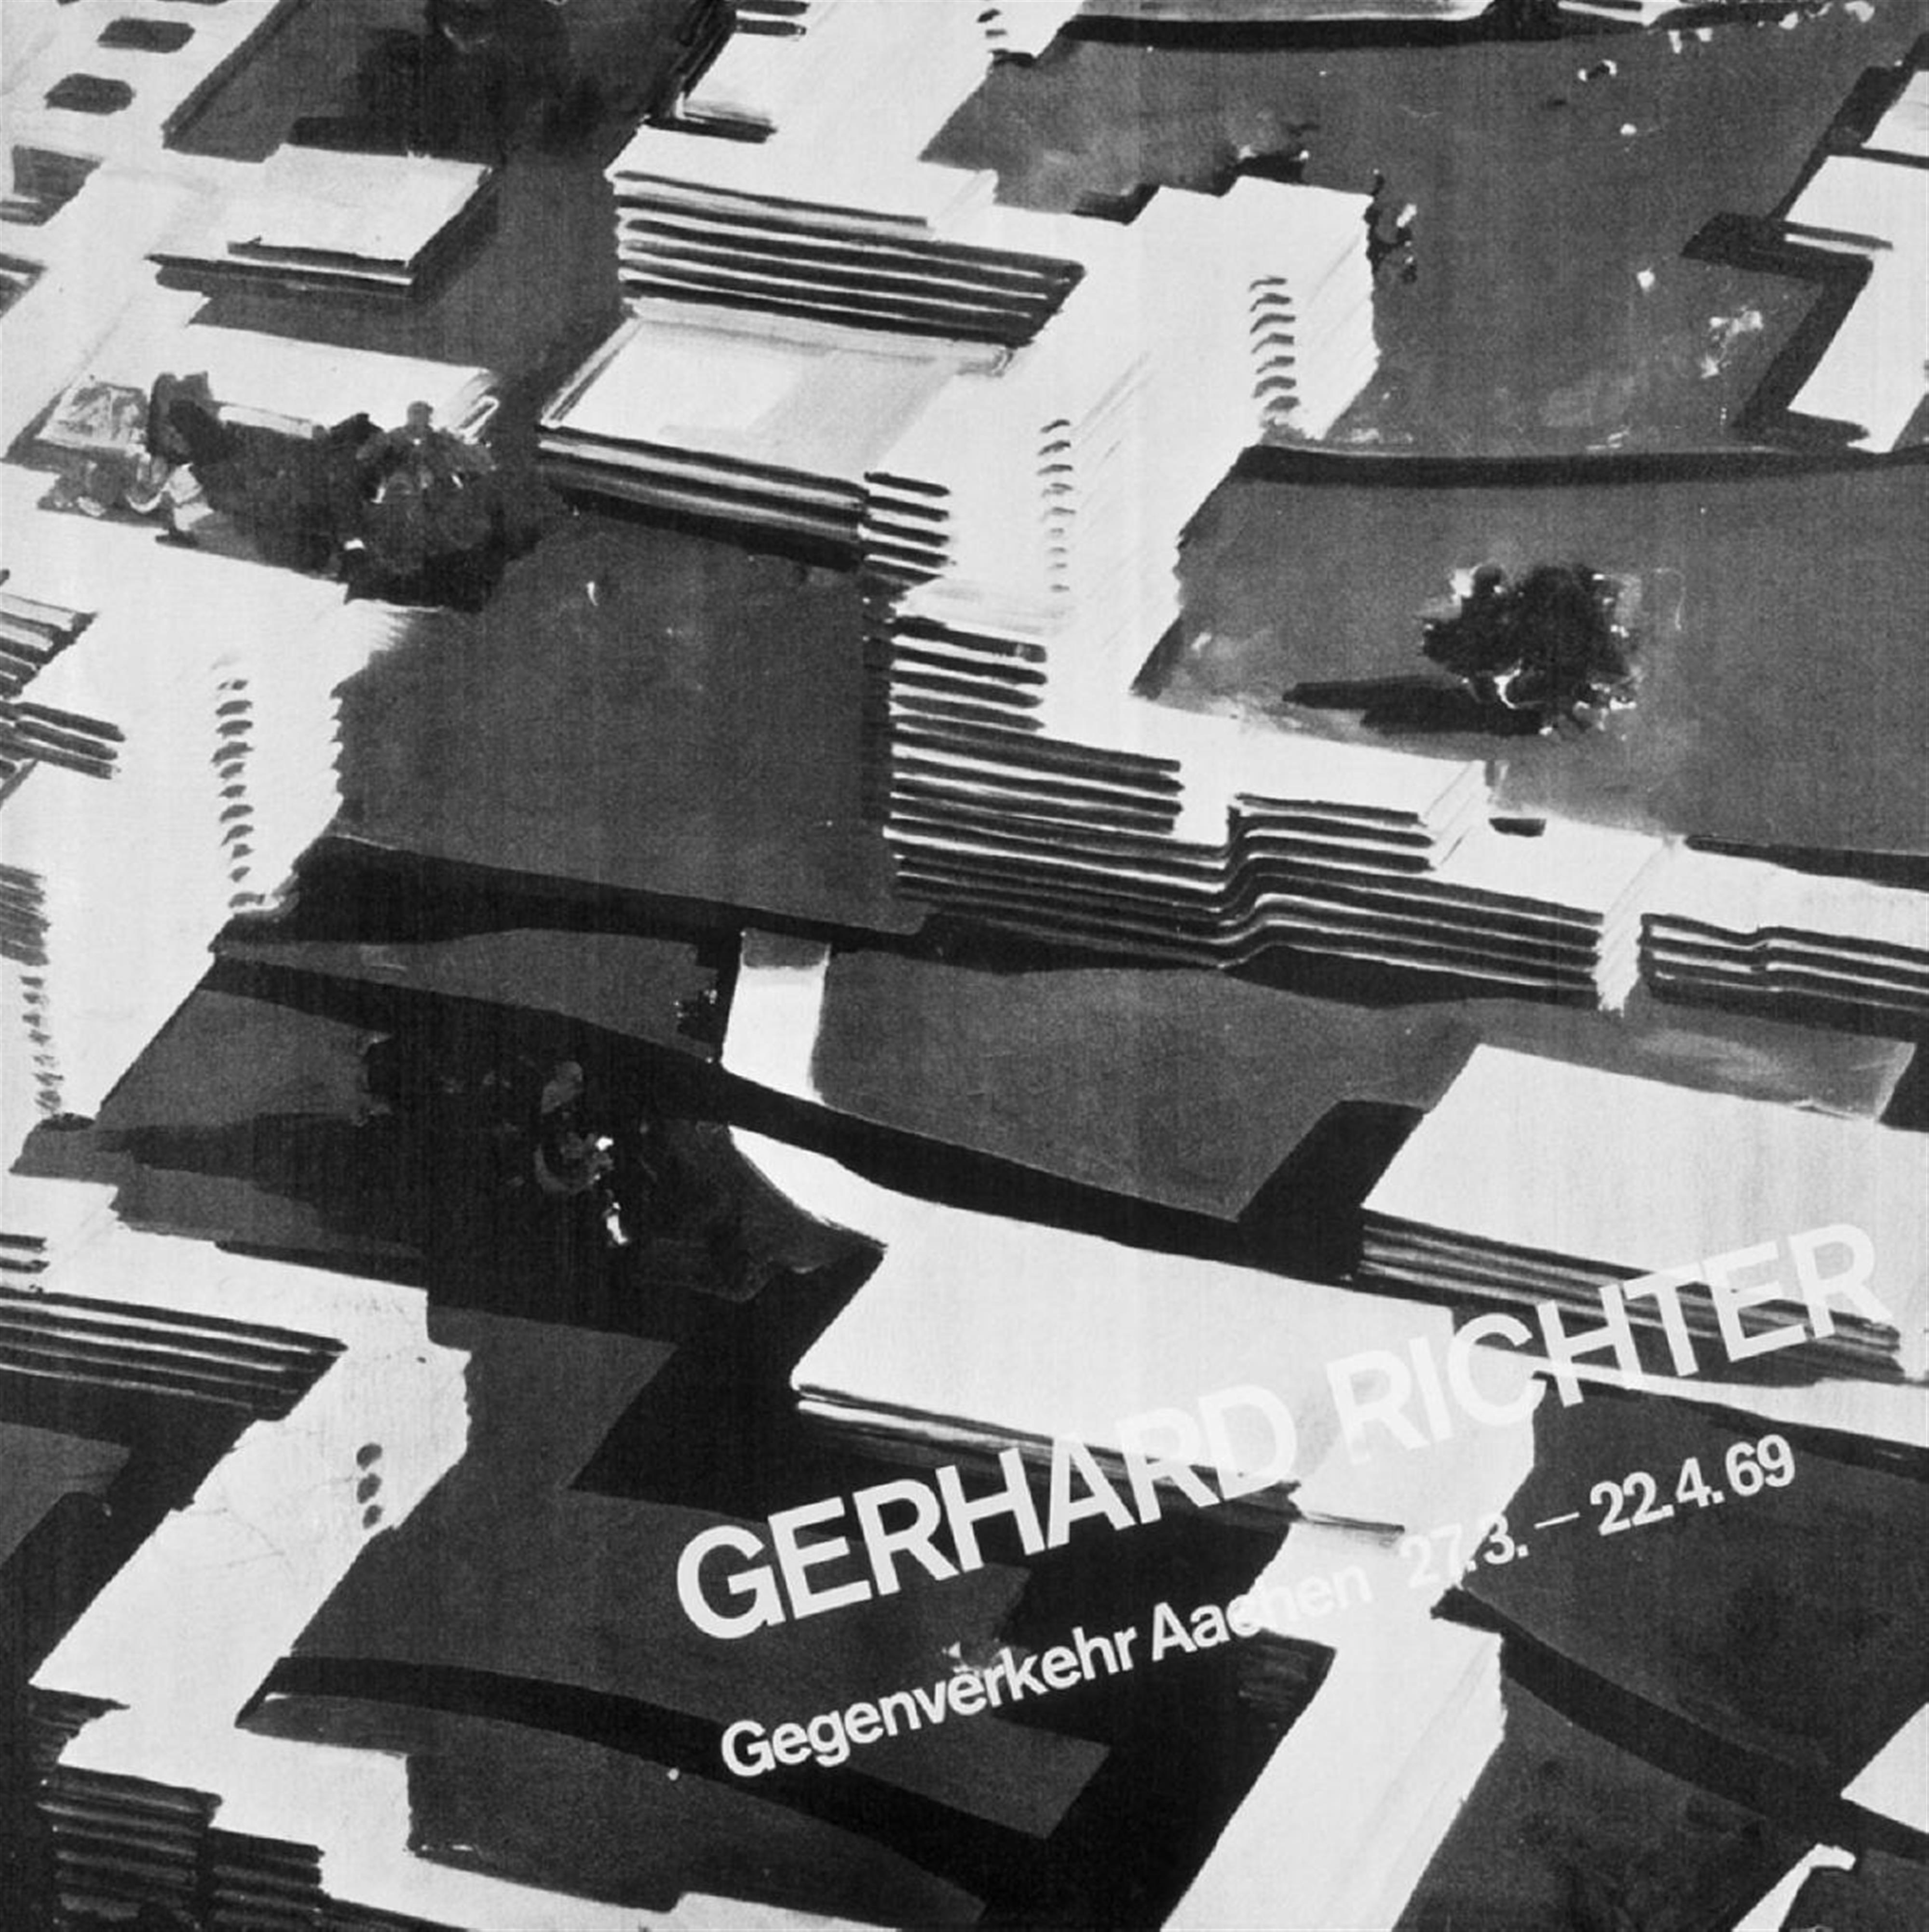 Gerhard Richter - Plakat Aachen - image-1